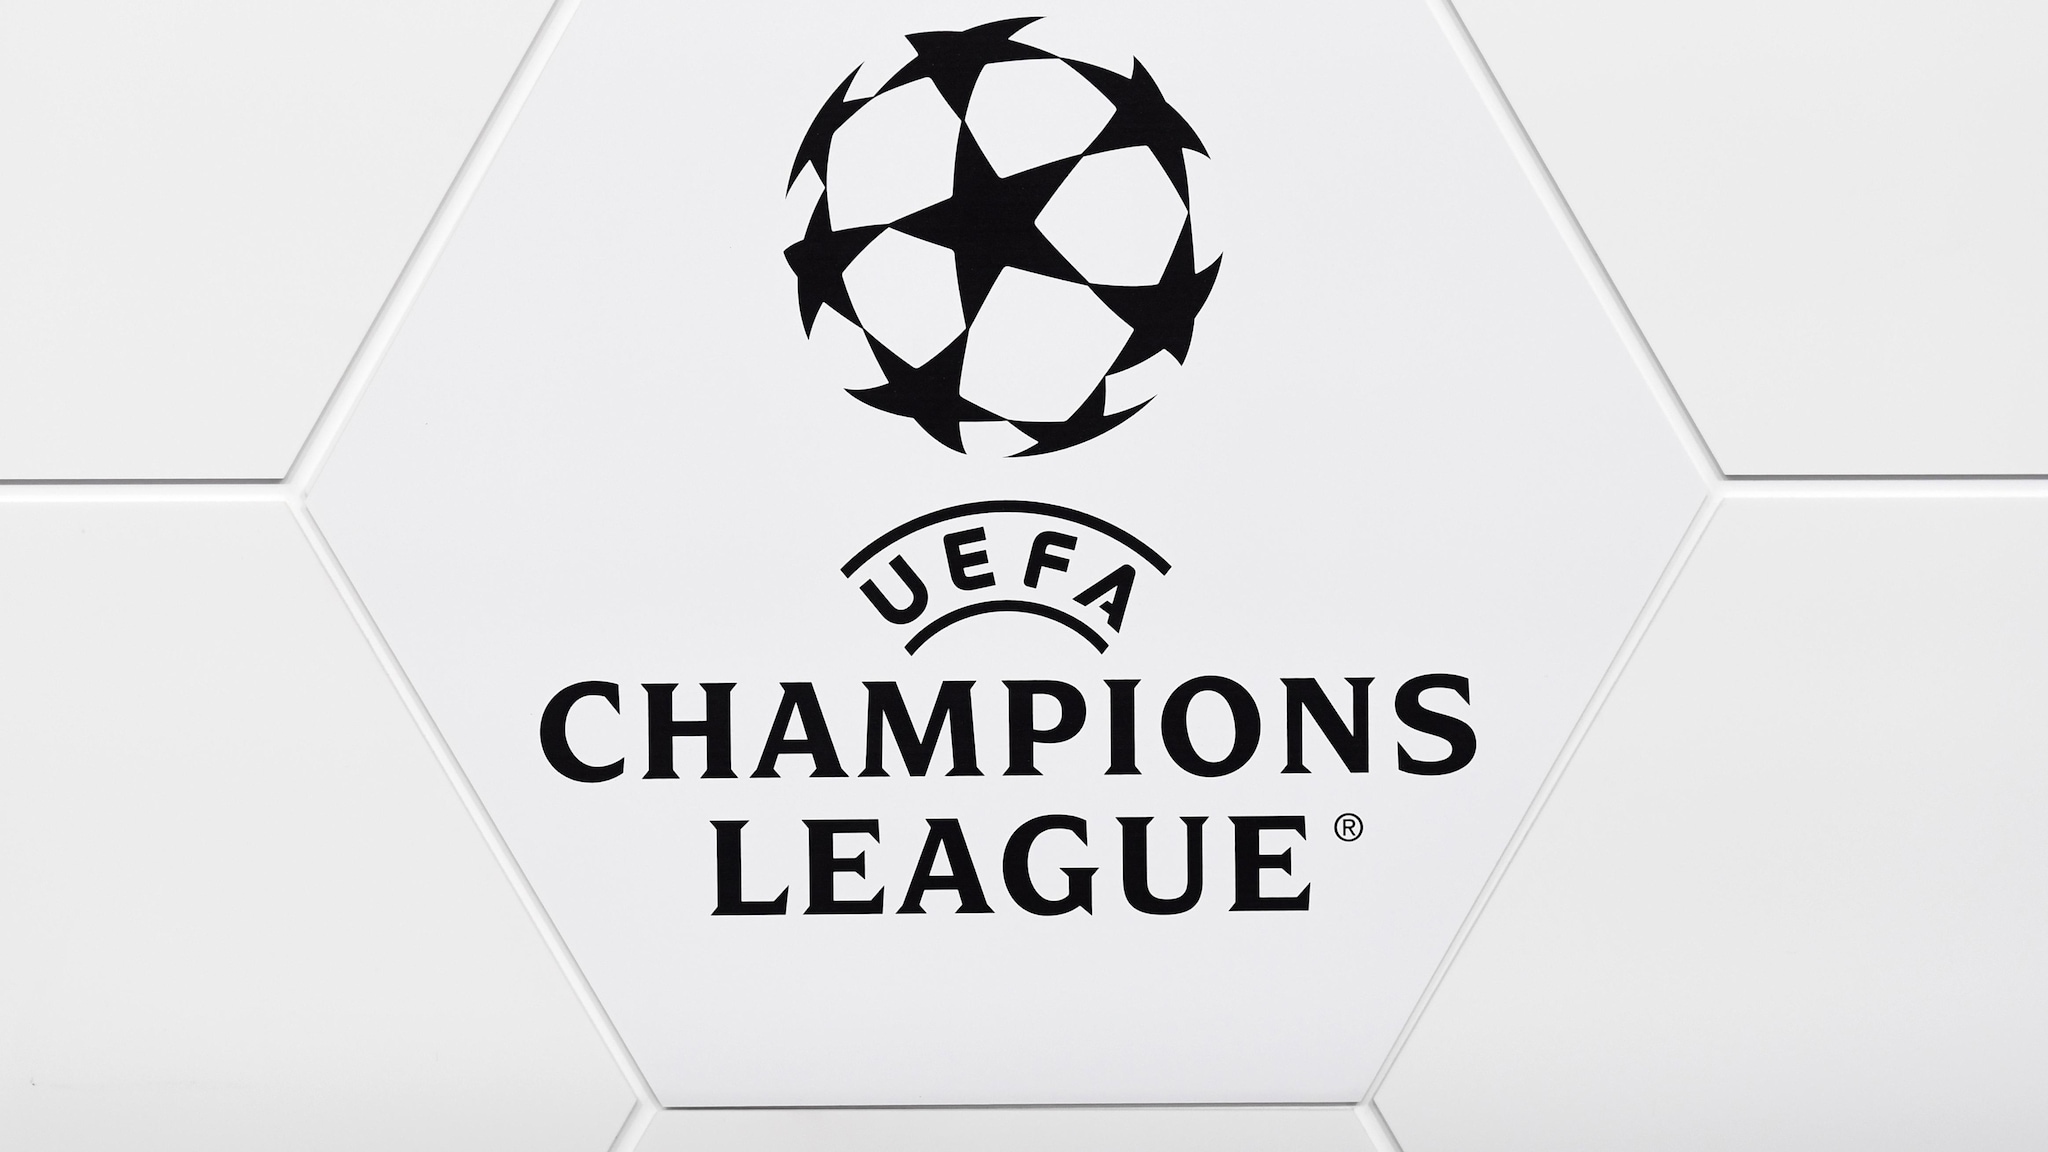 Champions league fixtures 2021/22